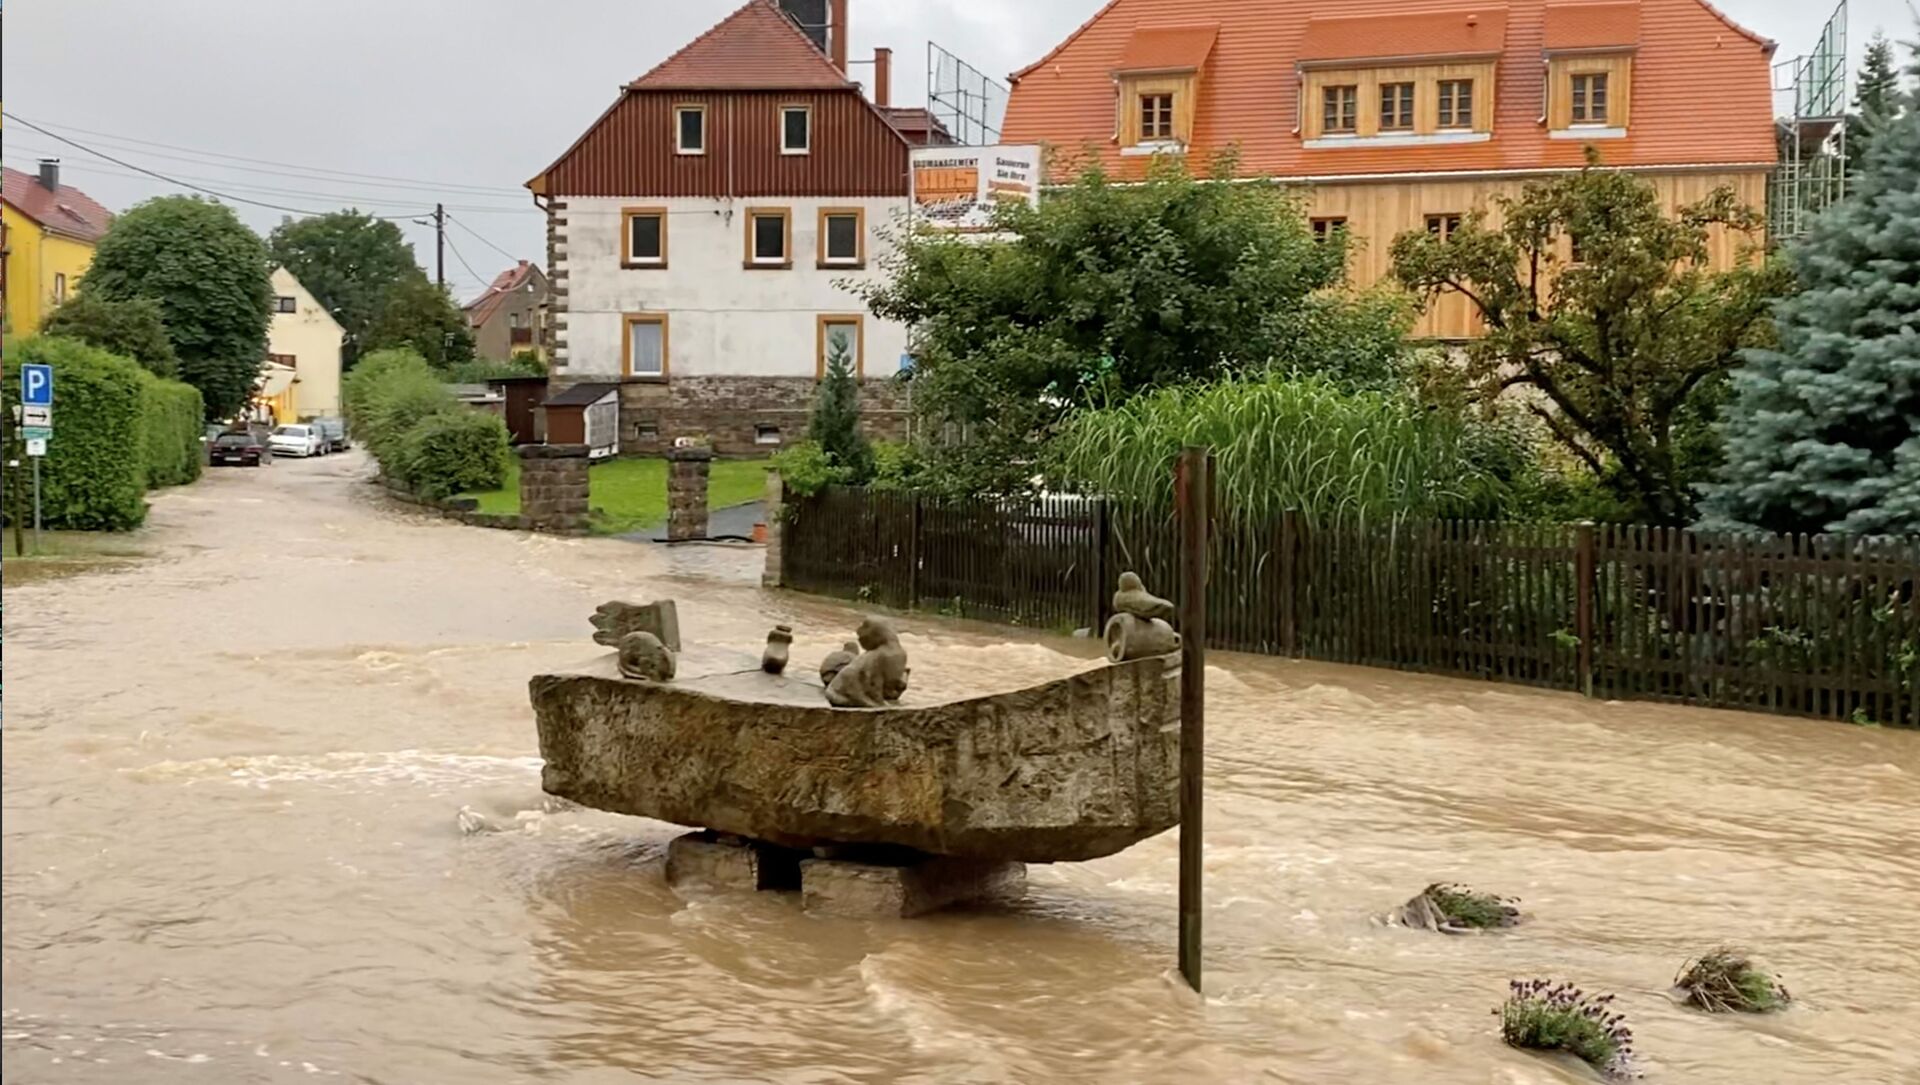 После проливных дождей в Райнхардтсдорф-Шона, Саксония, Германия, 17 июля 2021 года, паводковые воды текут по дороге. На этом снимке, сделанном 17 июля 2021 года в социальных сетях, есть видео, полученное REUTERS. - Sputnik Абхазия, 1920, 19.07.2021